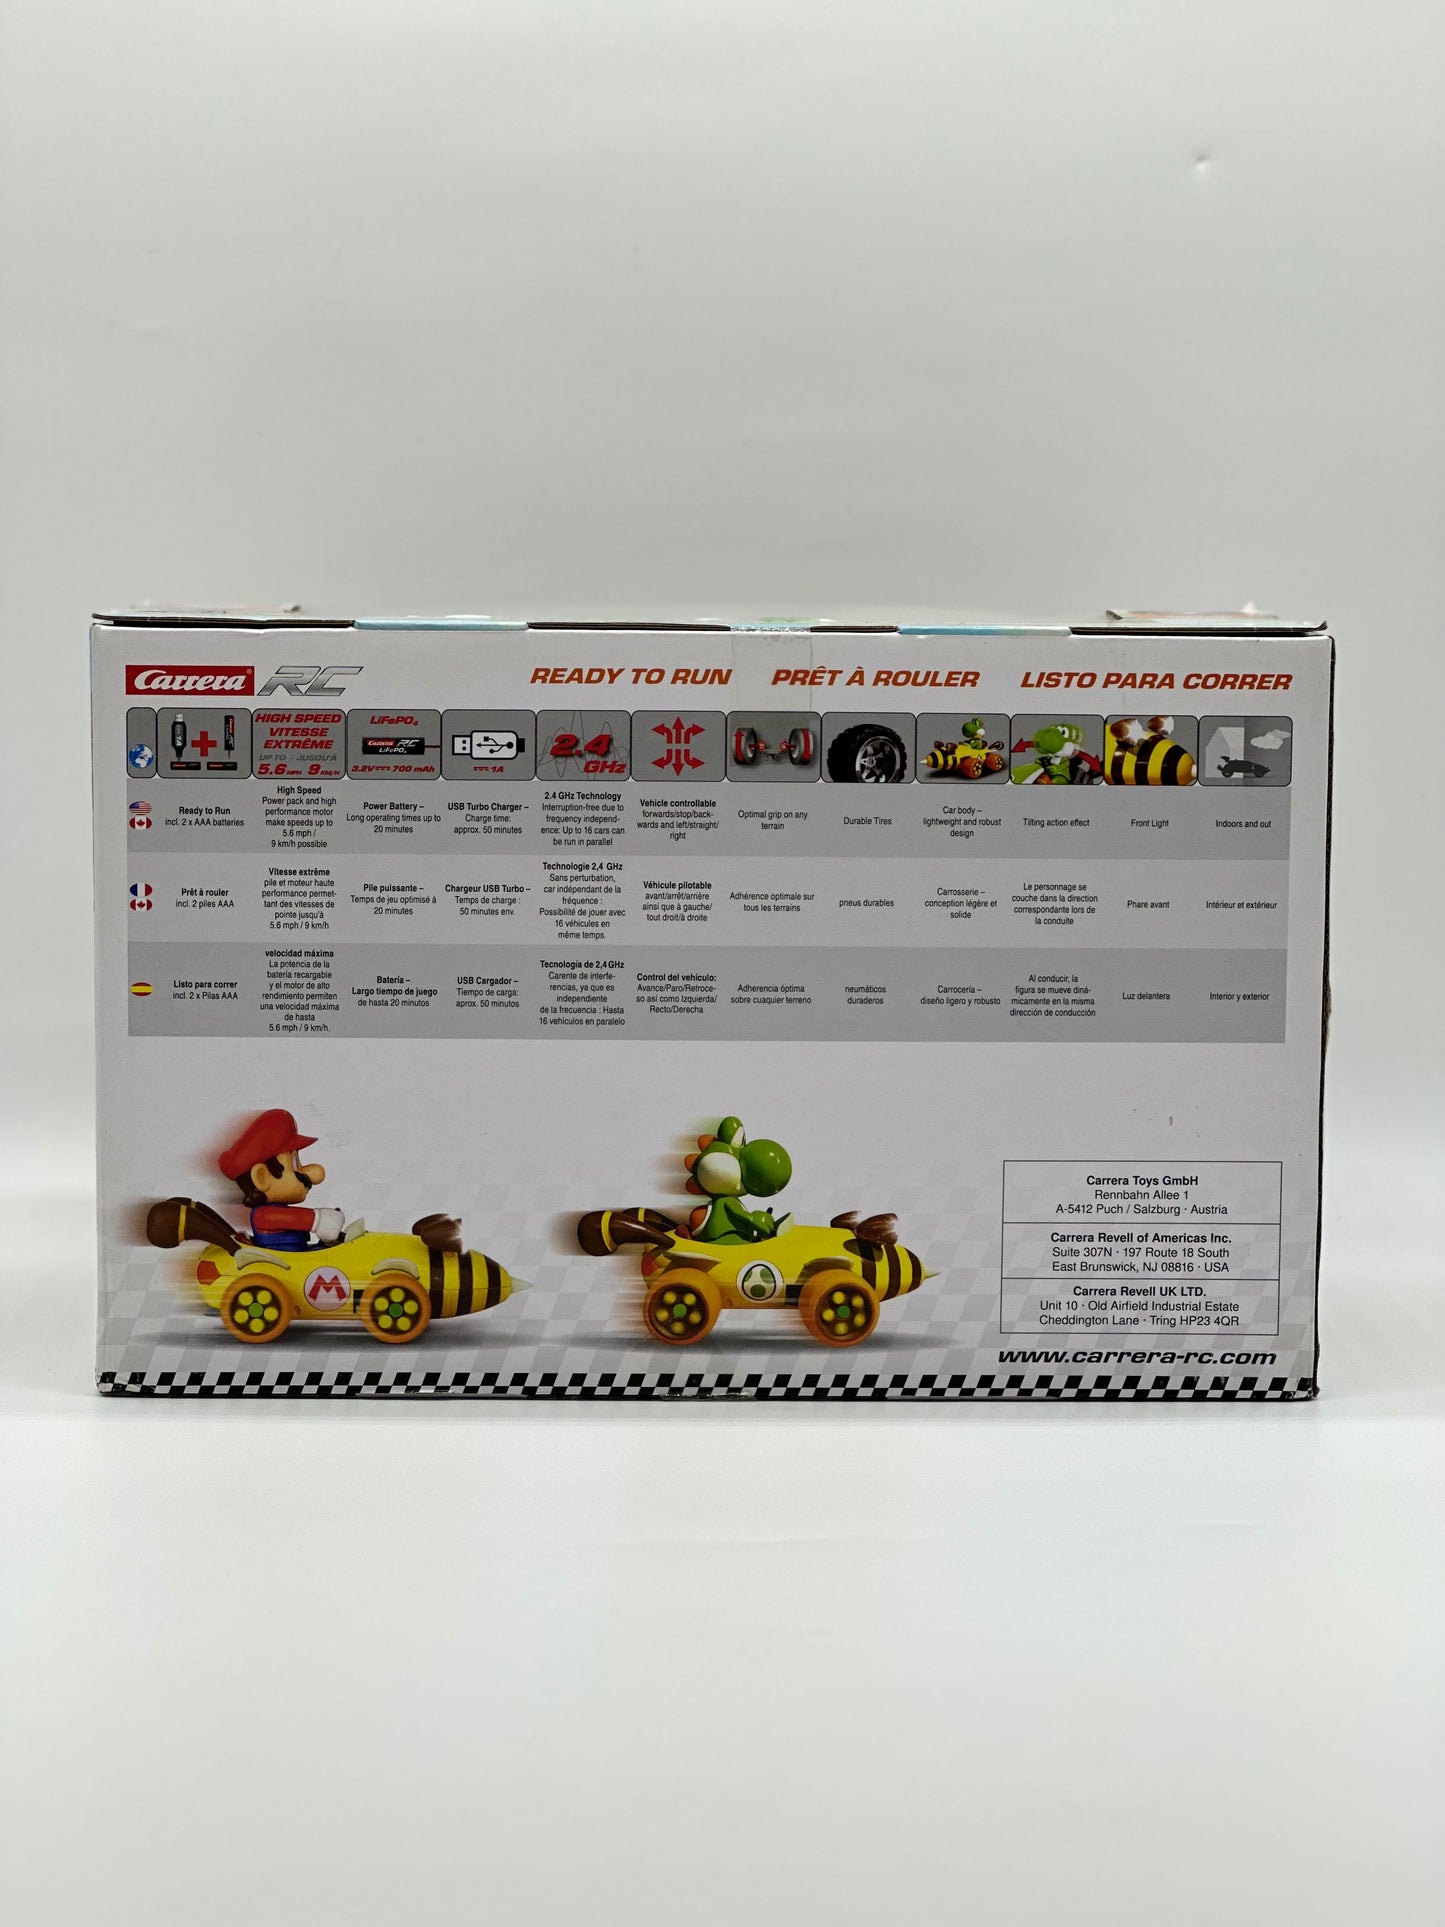 Nintendo Mario Kart Bumble V - Yoshi Racer 1:18 Scale